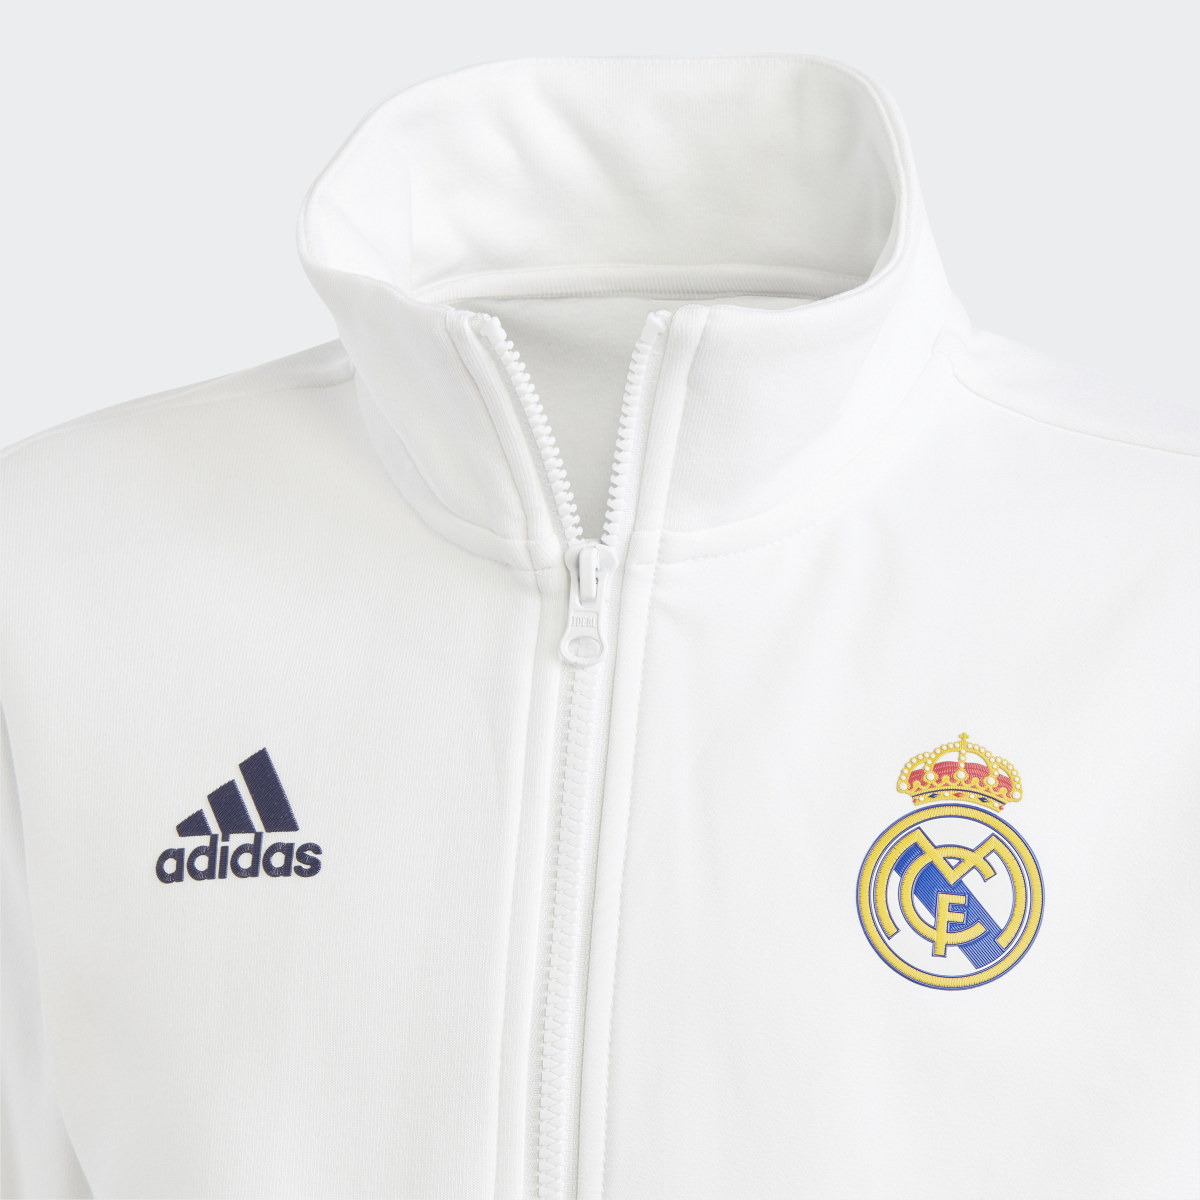 Adidas Chaqueta Himno Real Madrid. 7